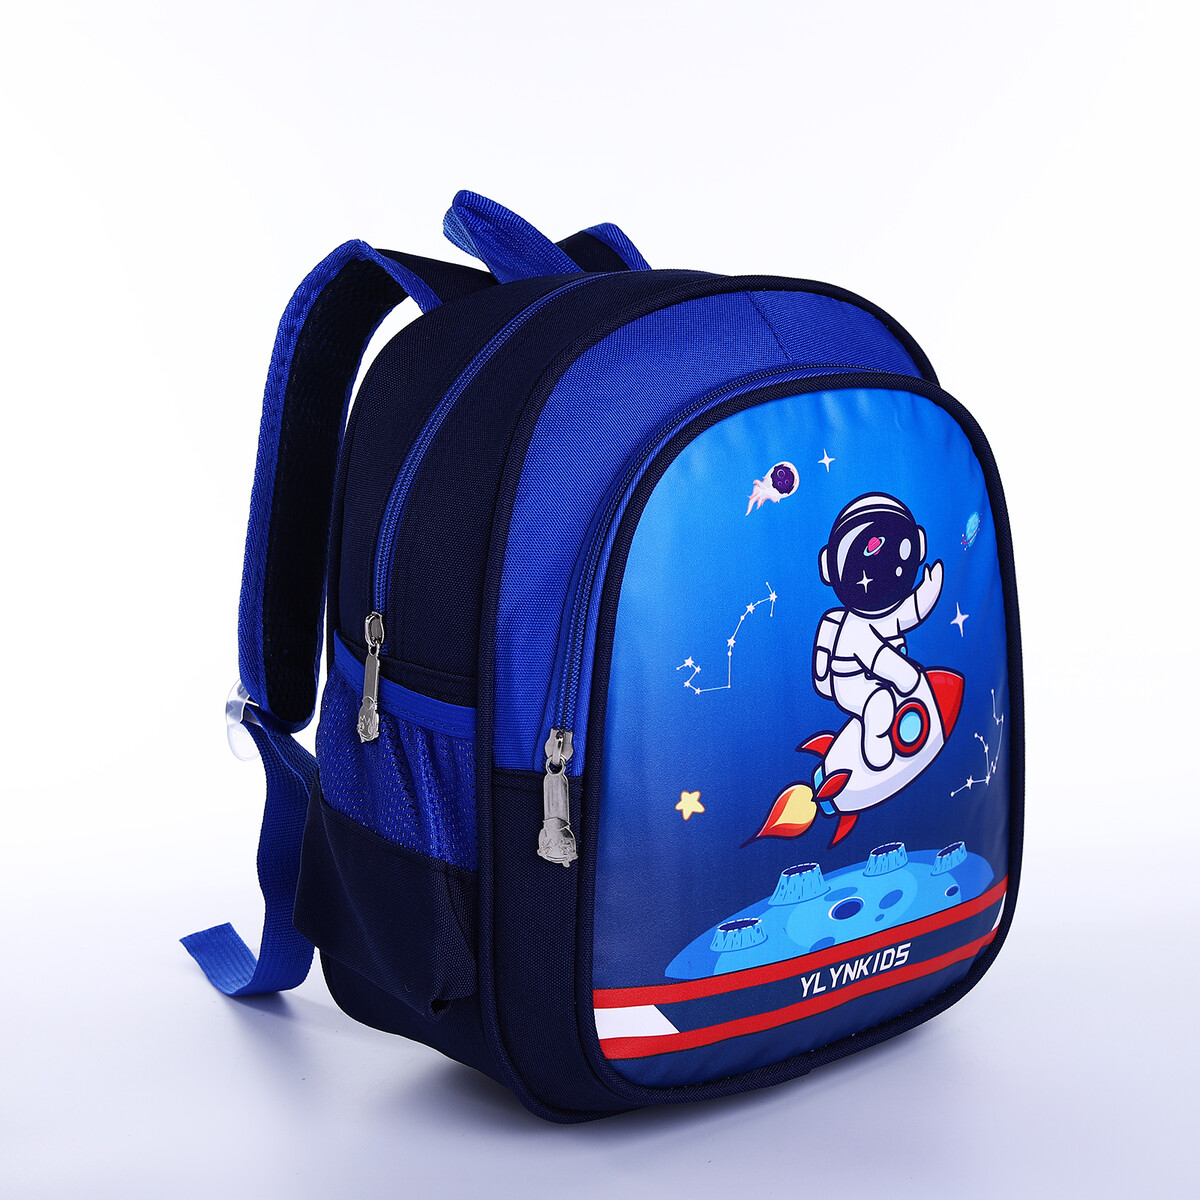 Рюкзак детский на молнии, 3 наружных кармана, цвет синий рюкзак туристический на молнии 4 наружных кармана красный